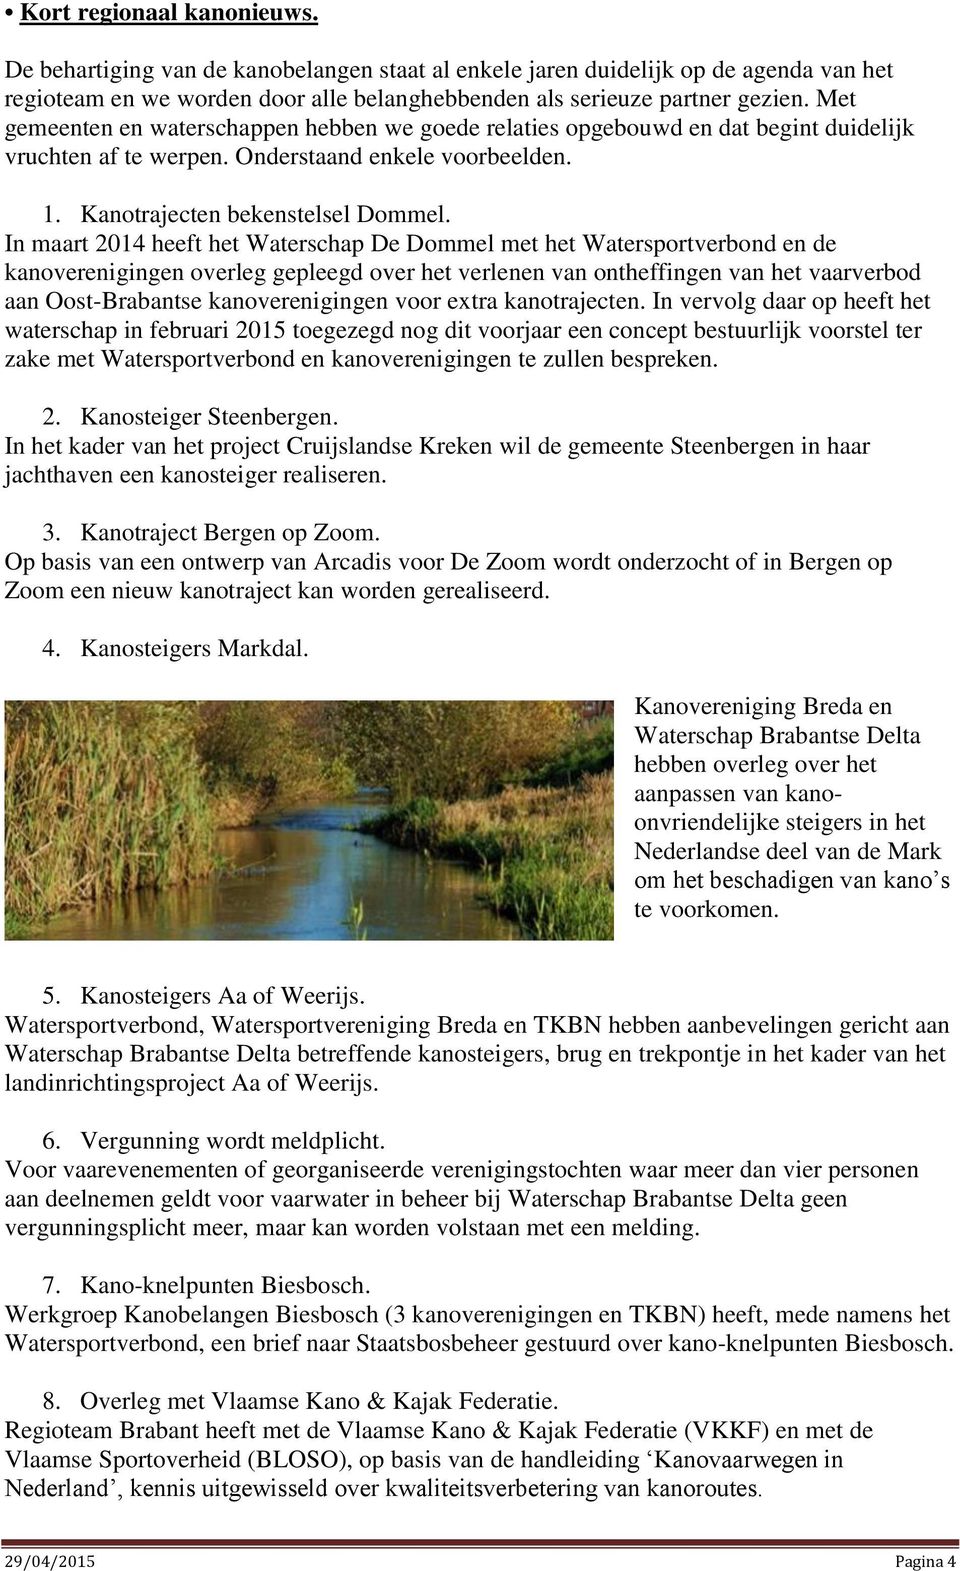 In maart 2014 heeft het Waterschap De Dommel met het Watersportverbond en de kanoverenigingen overleg gepleegd over het verlenen van ontheffingen van het vaarverbod aan Oost-Brabantse